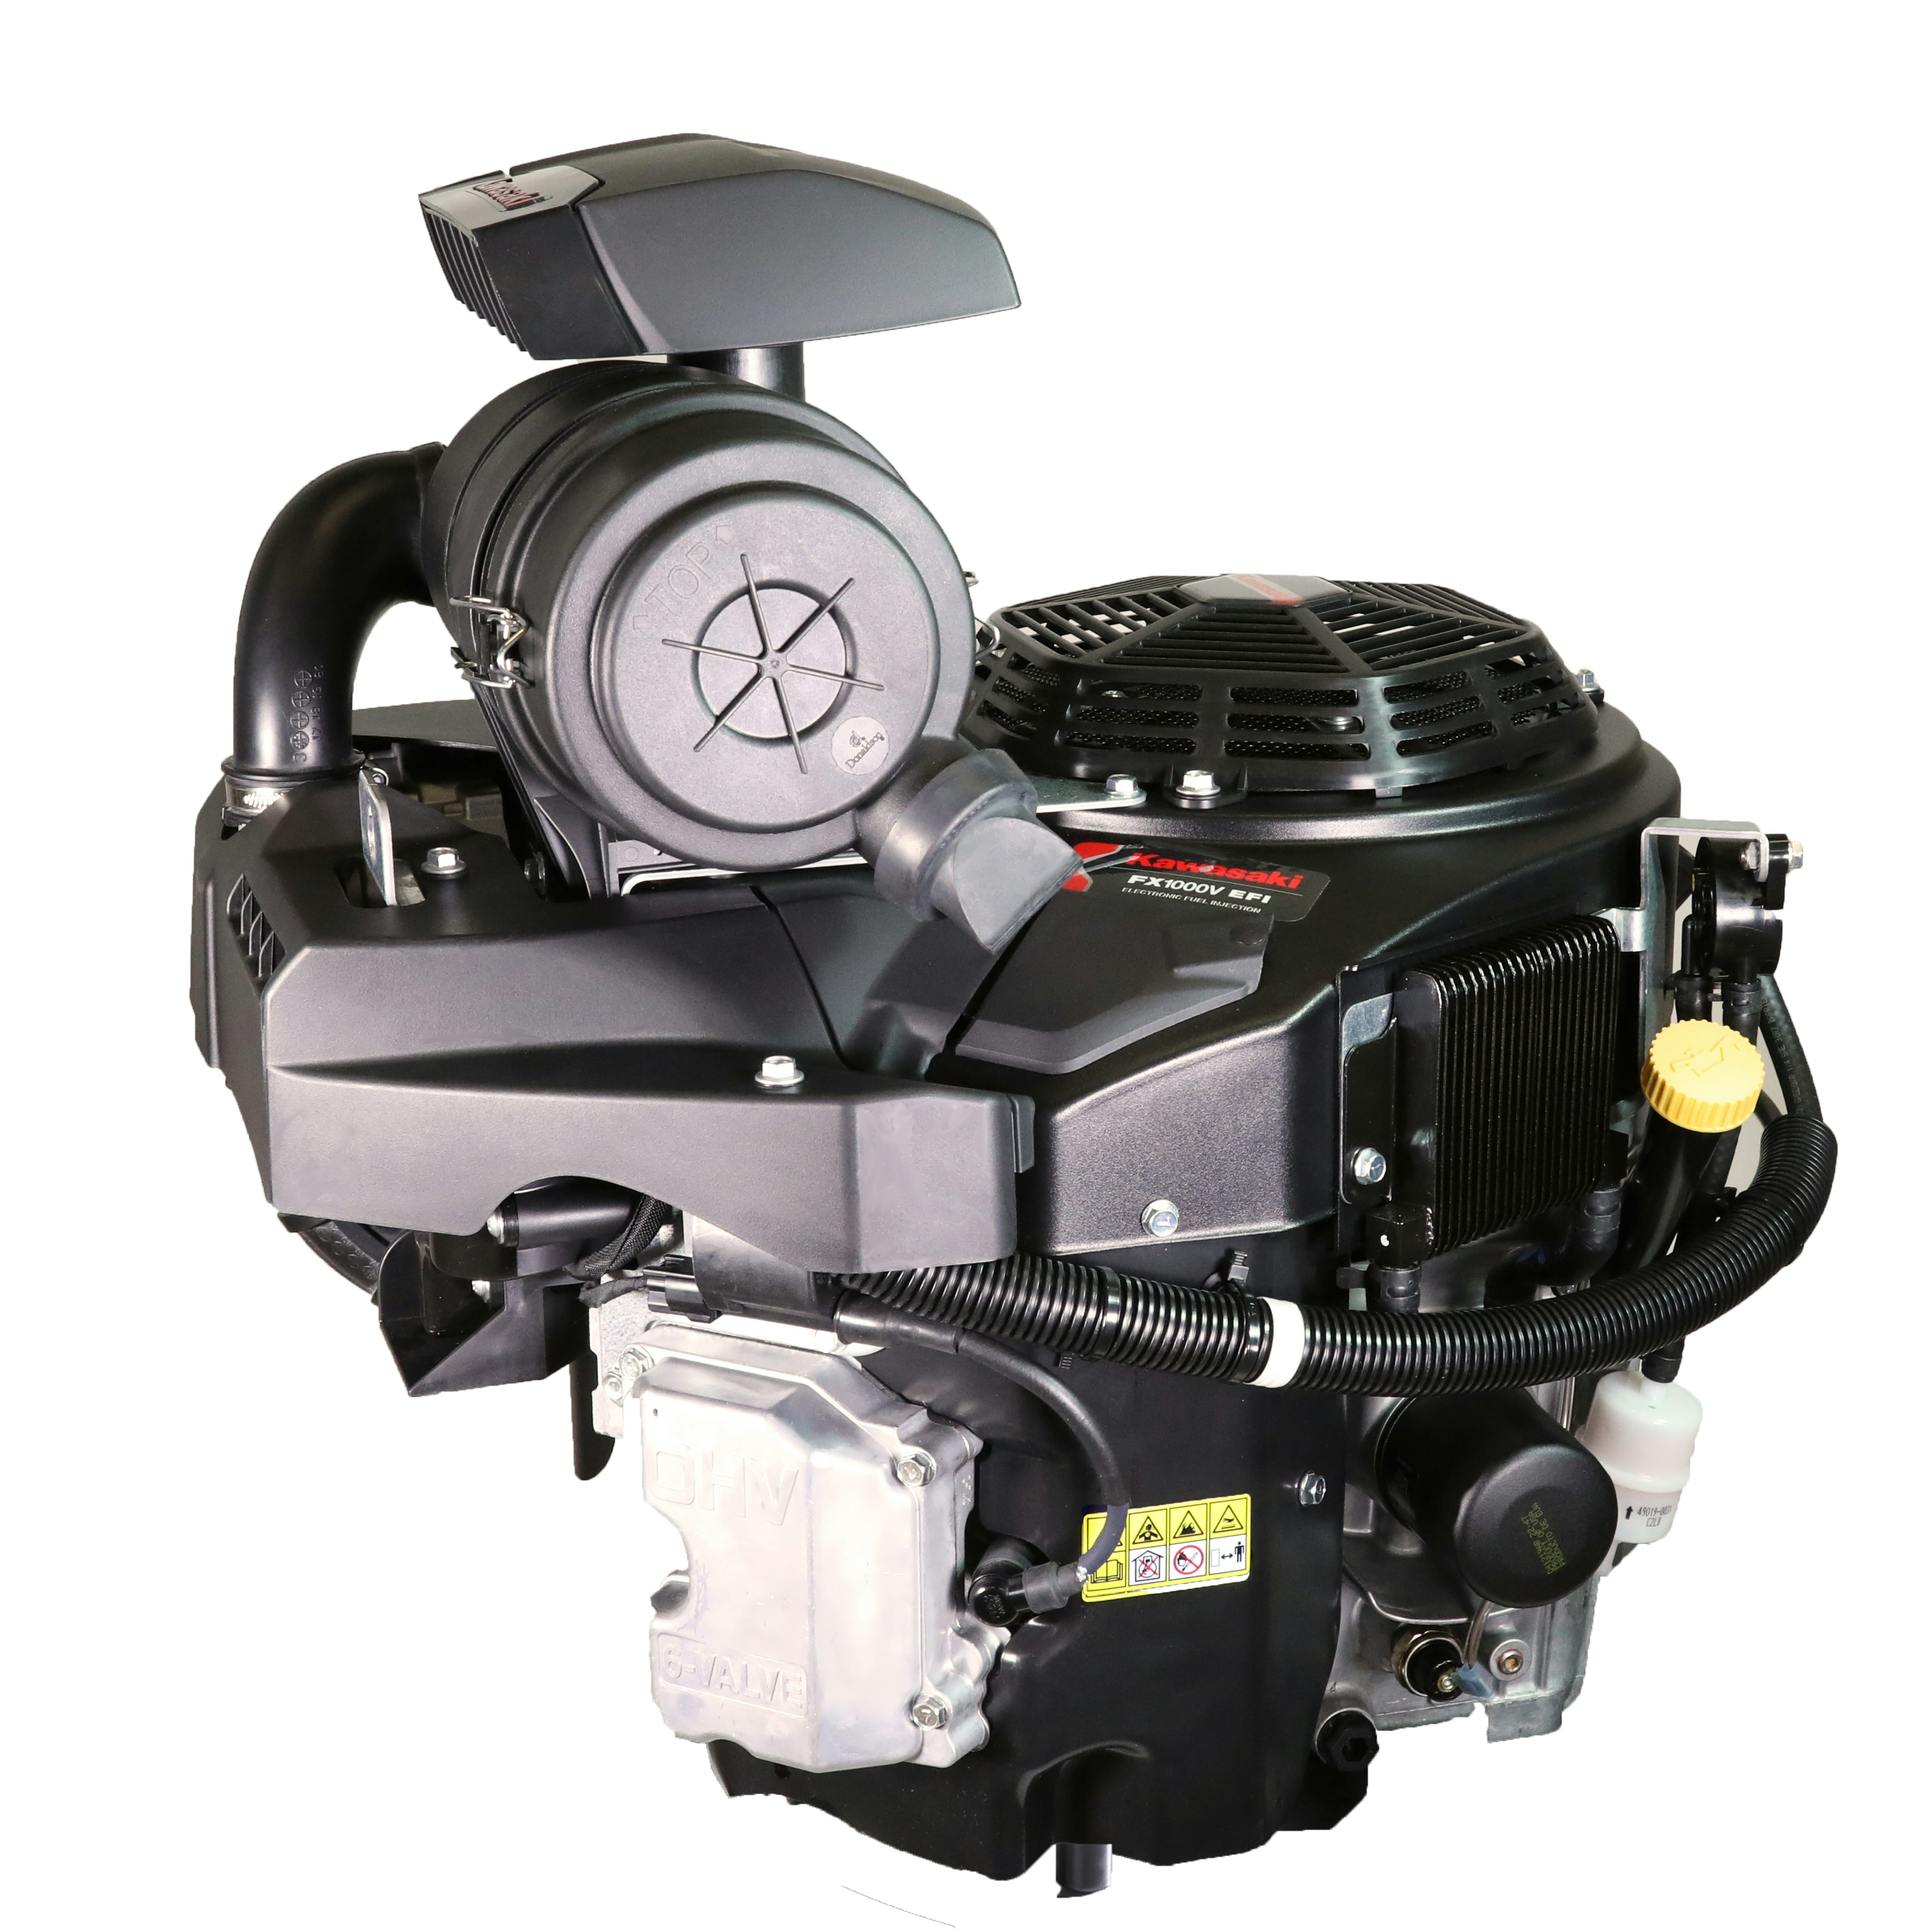 Kawasaki EFI Engine From: Kawasaki Engines/Power Products (Kawasaki Motors Corp., U.S.A.) | Off-Highway